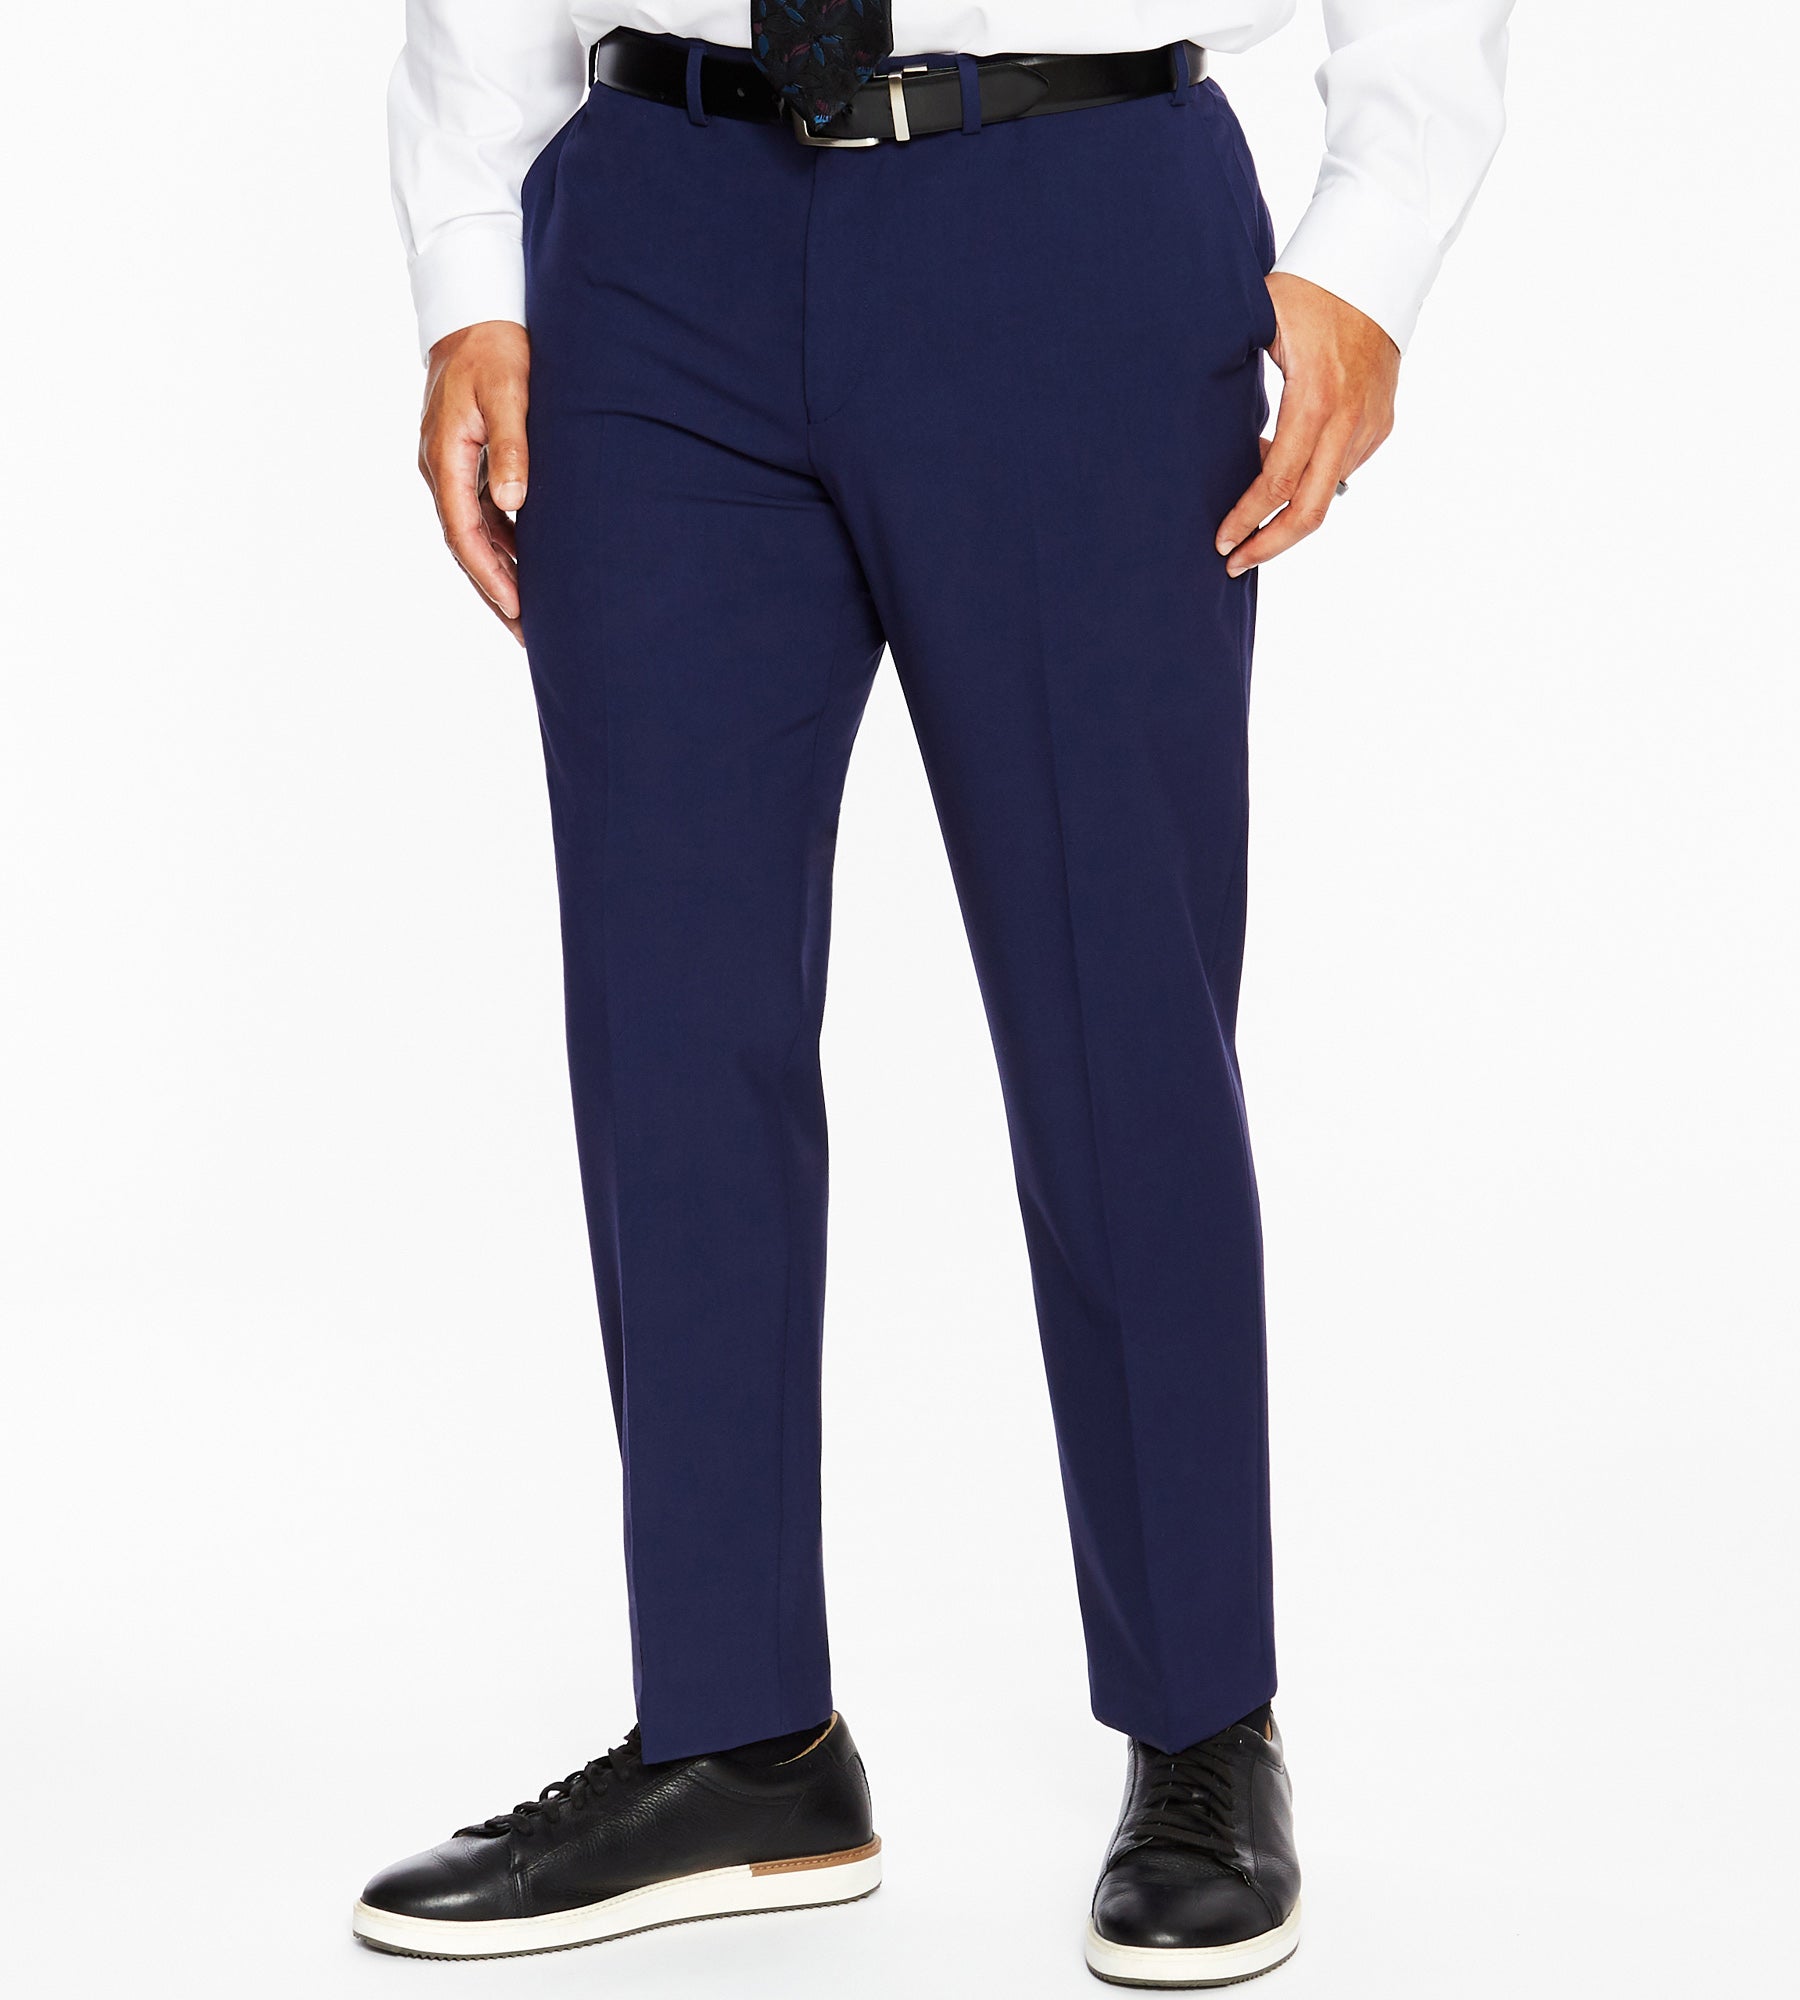 Modern Fit City Comfort Dress Pants – Mr. Big & Tall